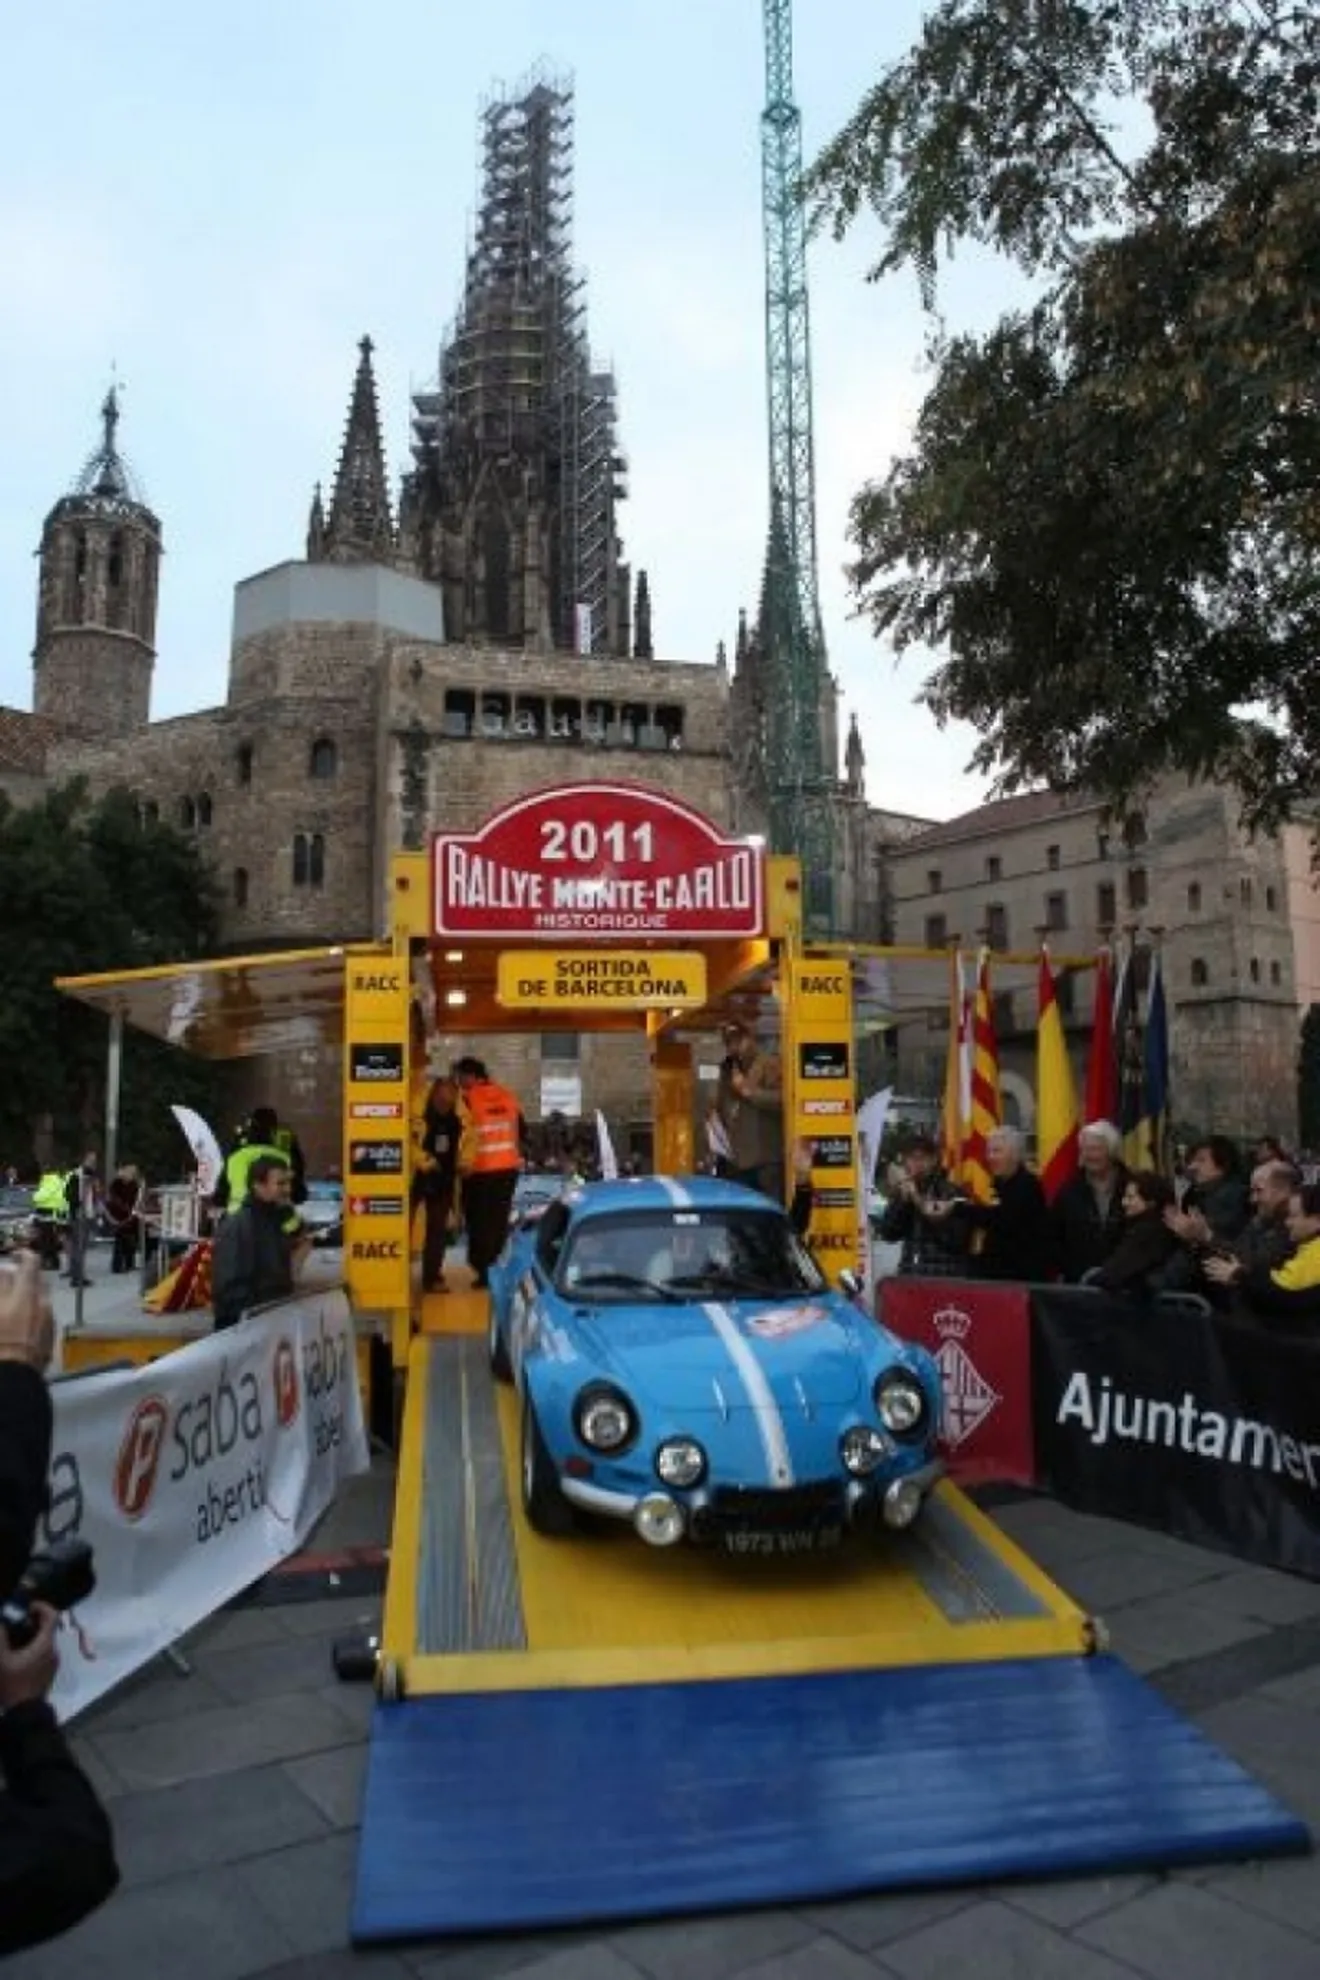 El Rallye Monte-Carlo Histórico saldrá desde Barcelona por 10ª vez consecutiva